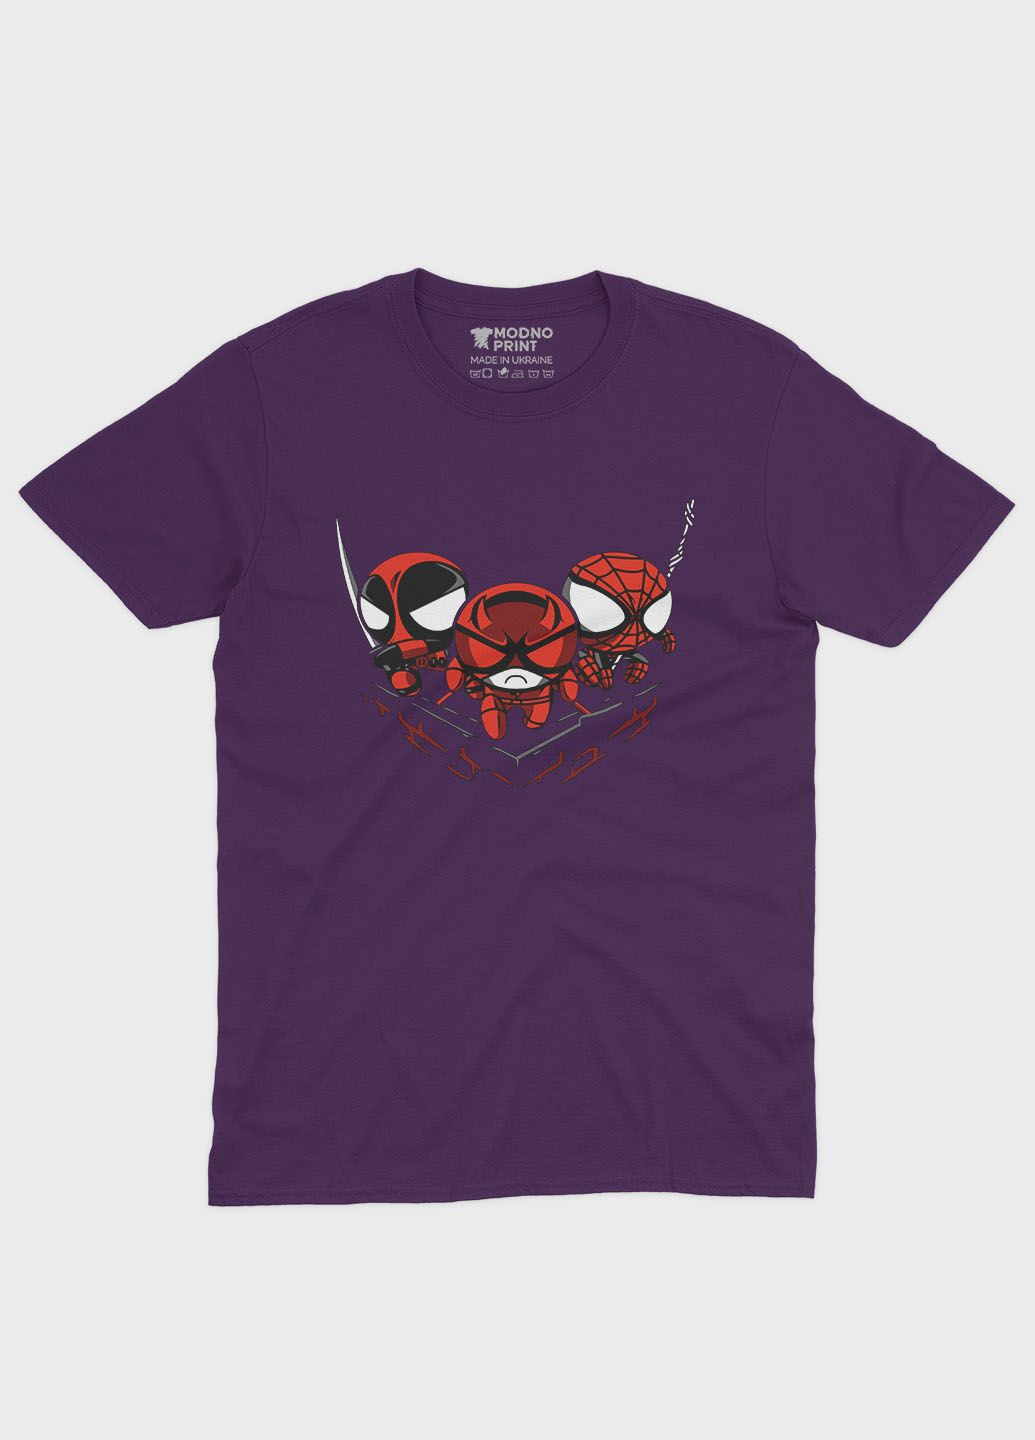 Фиолетовая демисезонная футболка для девочки с принтом супергероя - человек-паук (ts001-1-dby-006-014-069-g) Modno